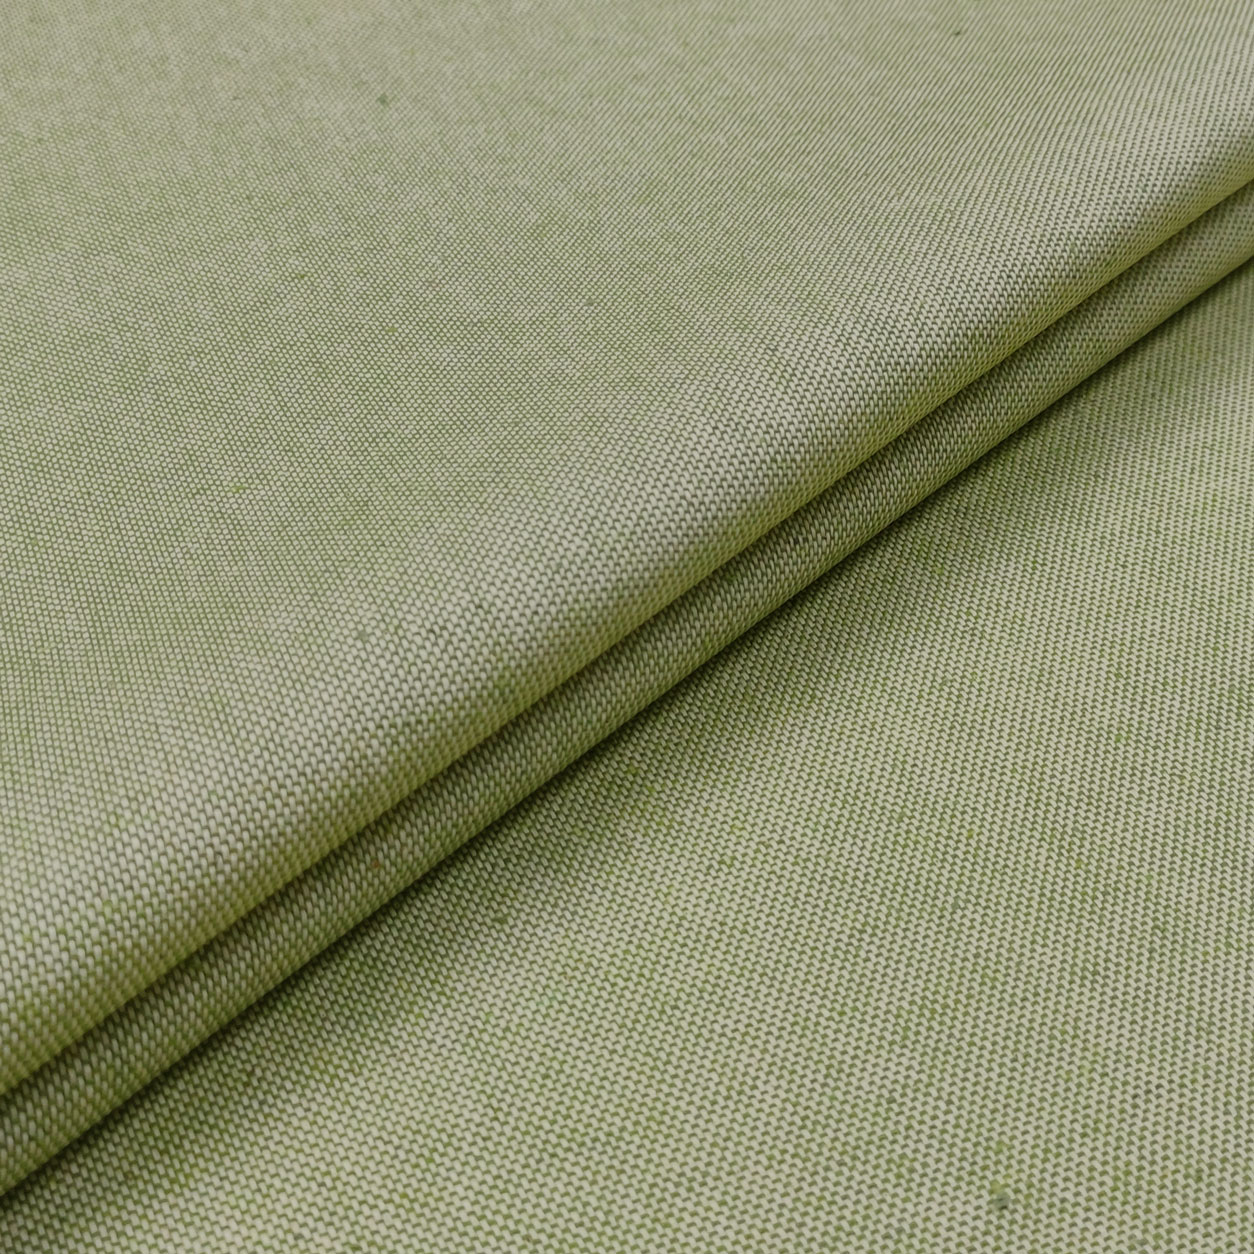 tovaglia-resinata-verde-chiaro-dettaglio